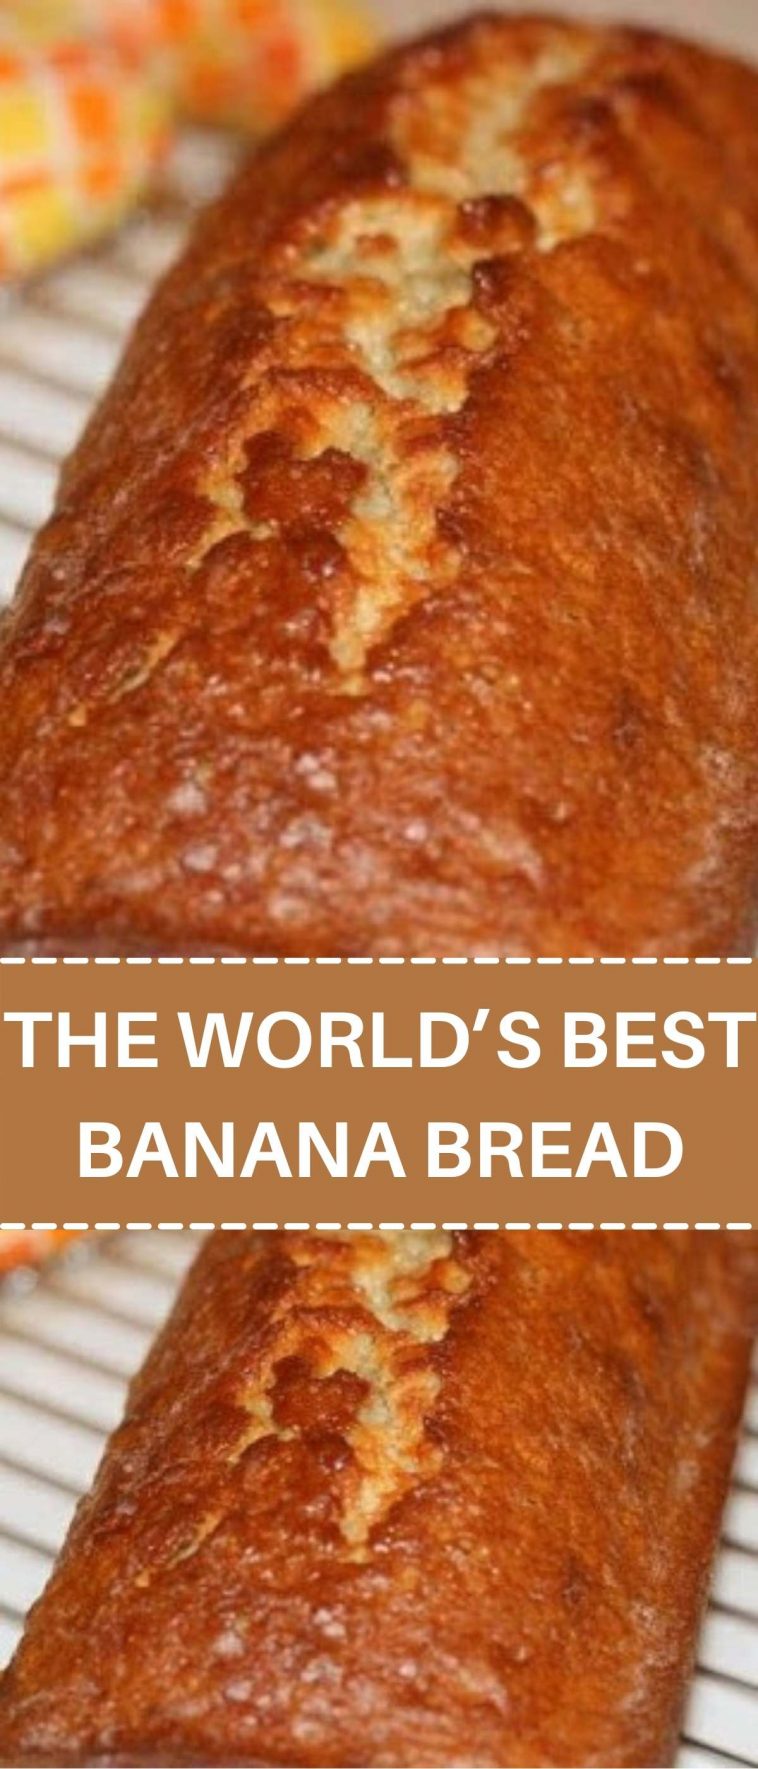 THE WORLD’S BEST BANANA BREAD RECIPE